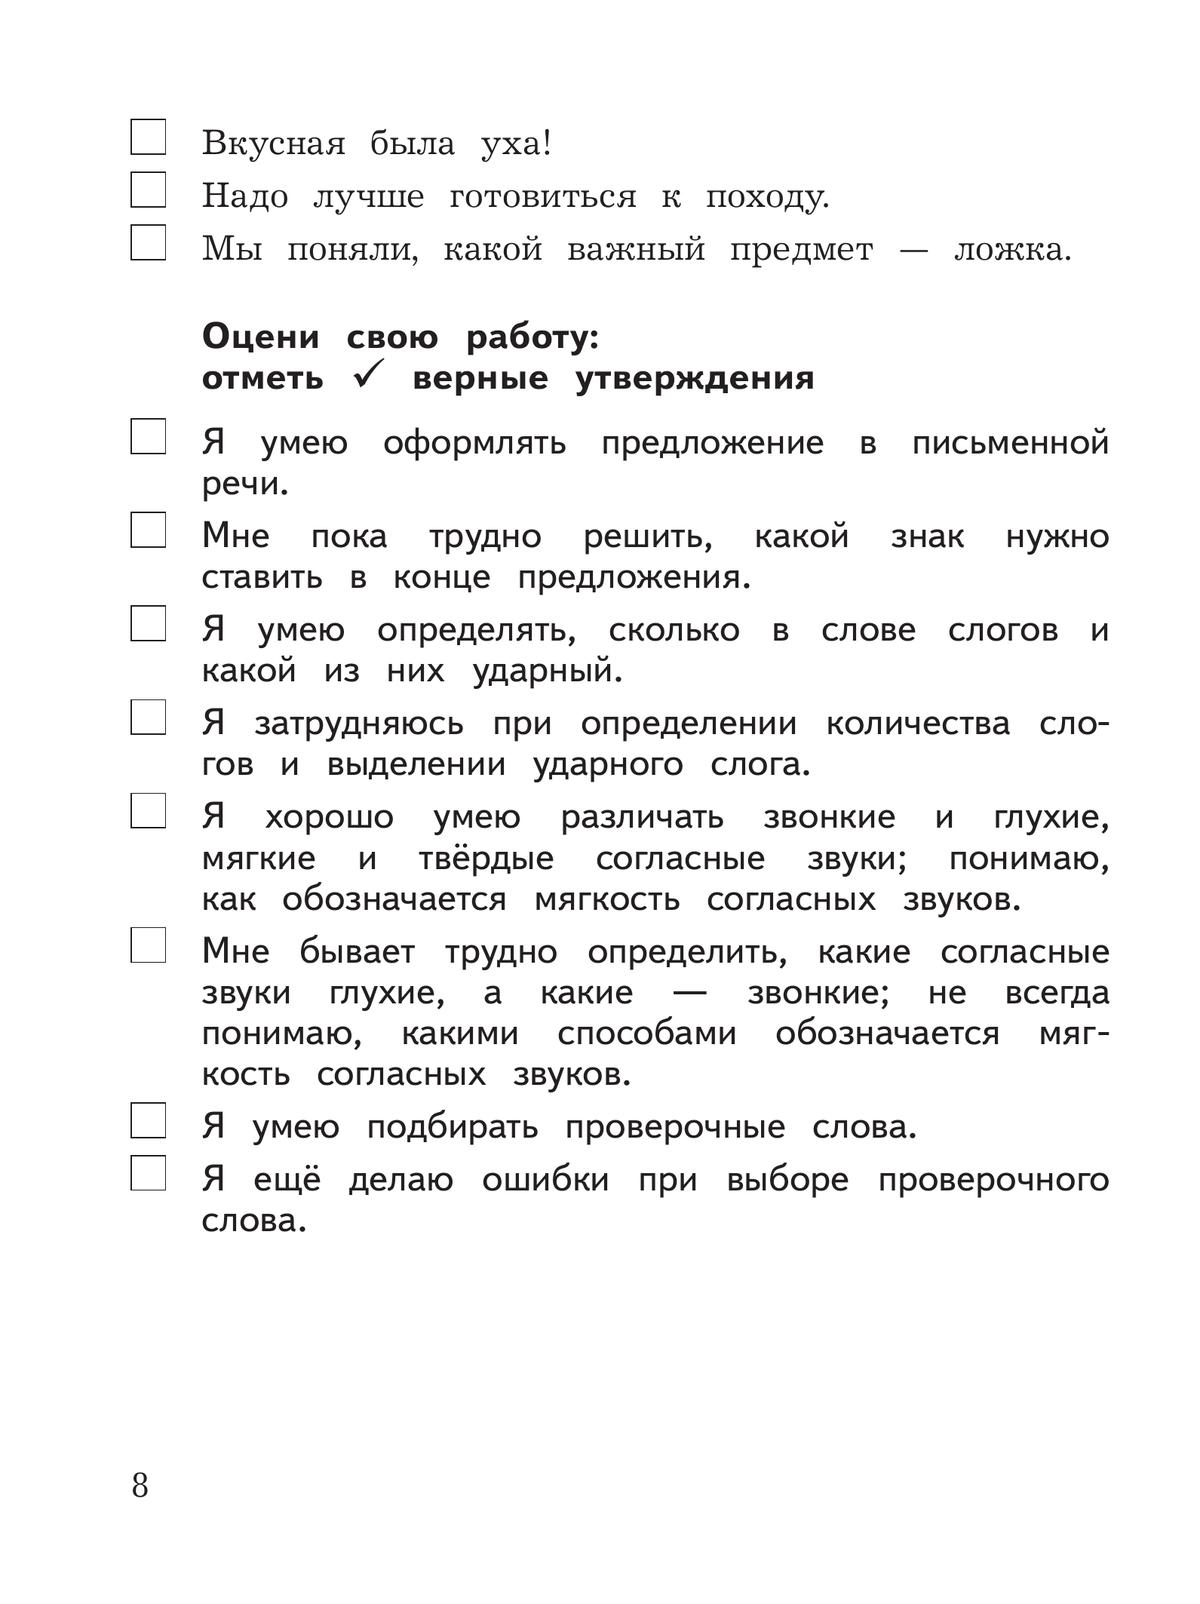 Русский язык. Предварительный контроль, текущий контроль, итоговый контроль. 2 класс 2